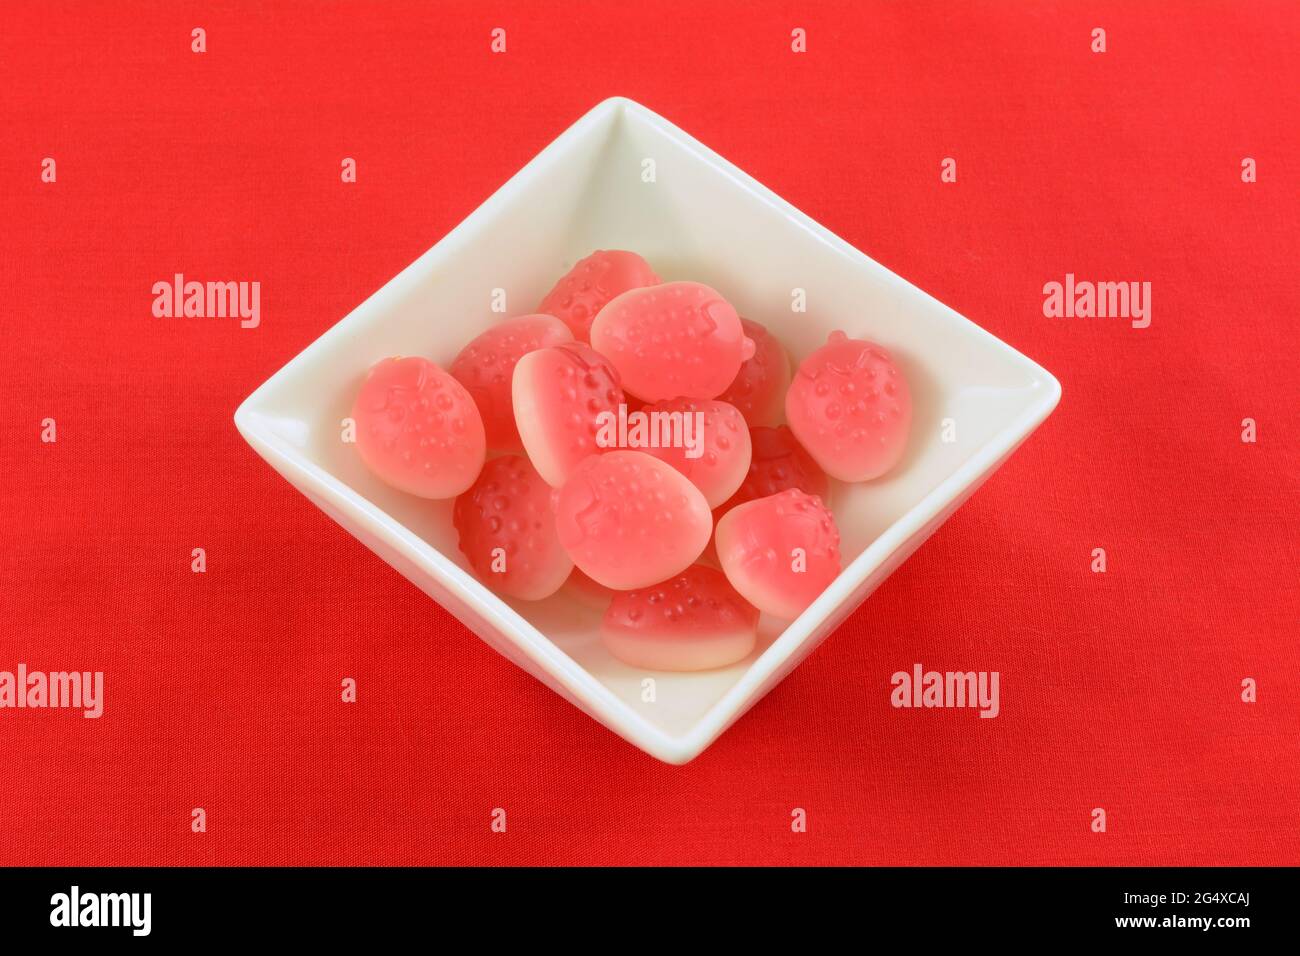 Erdbeerbonbon in Form von Erdbeerfrucht in weißer Süßigkeitenschale auf rotem Hintergrund Stockfoto